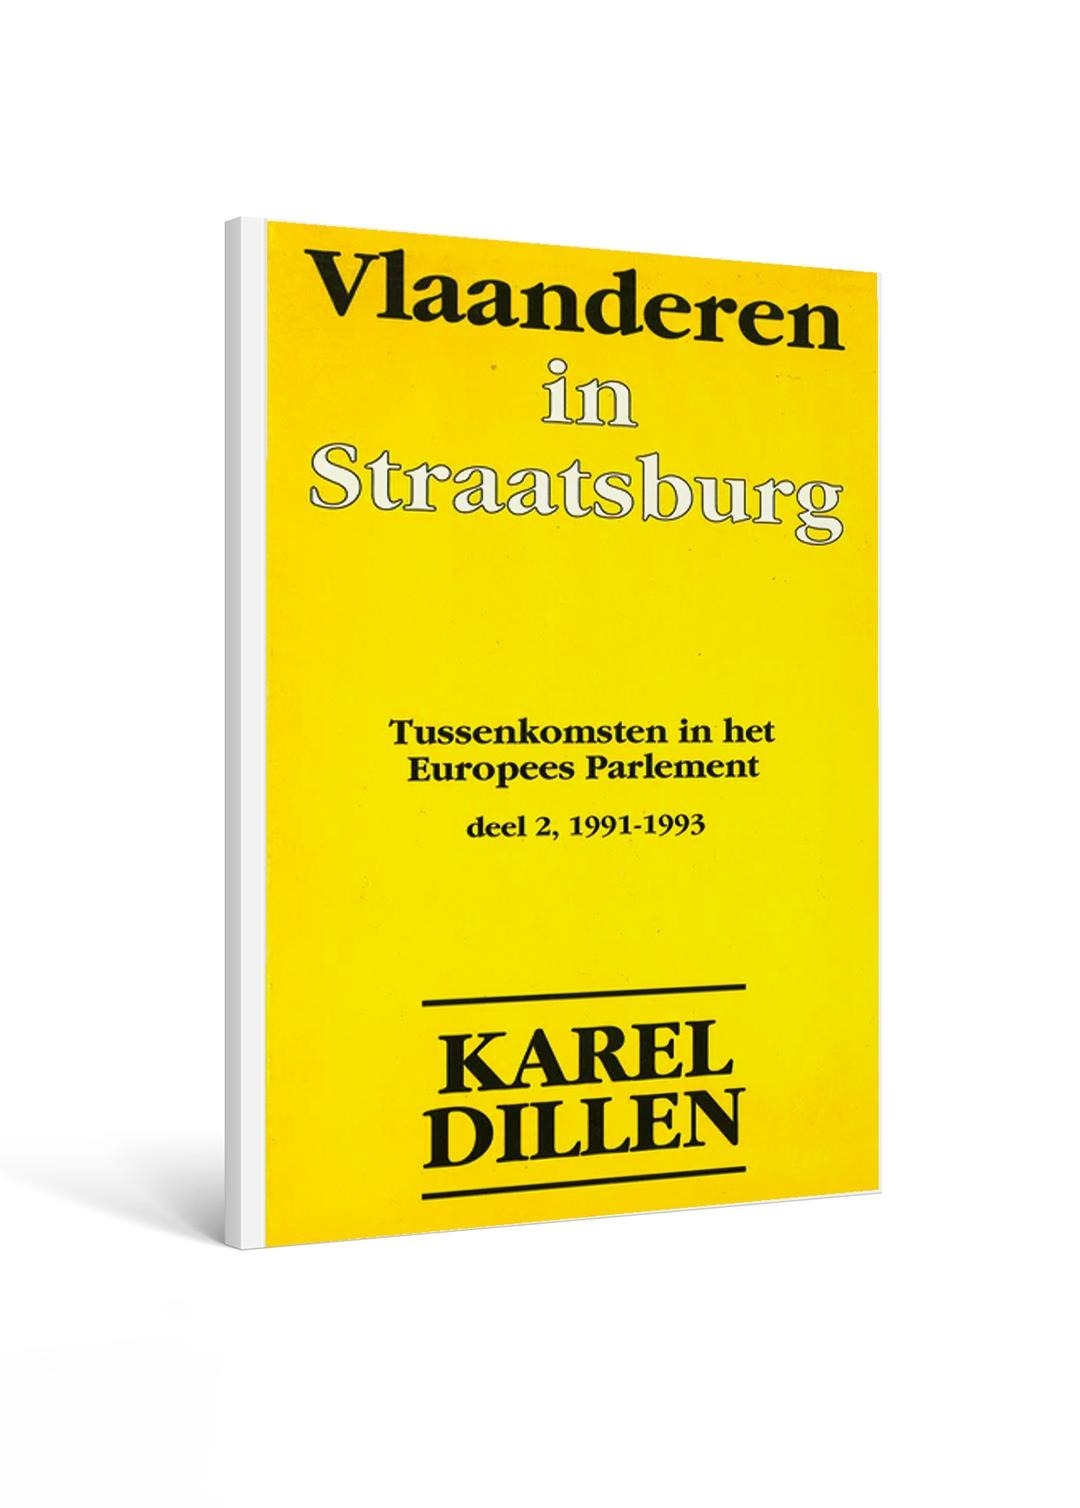 Vlaanderen in Straatsburg - Karel Dillen - deel 2